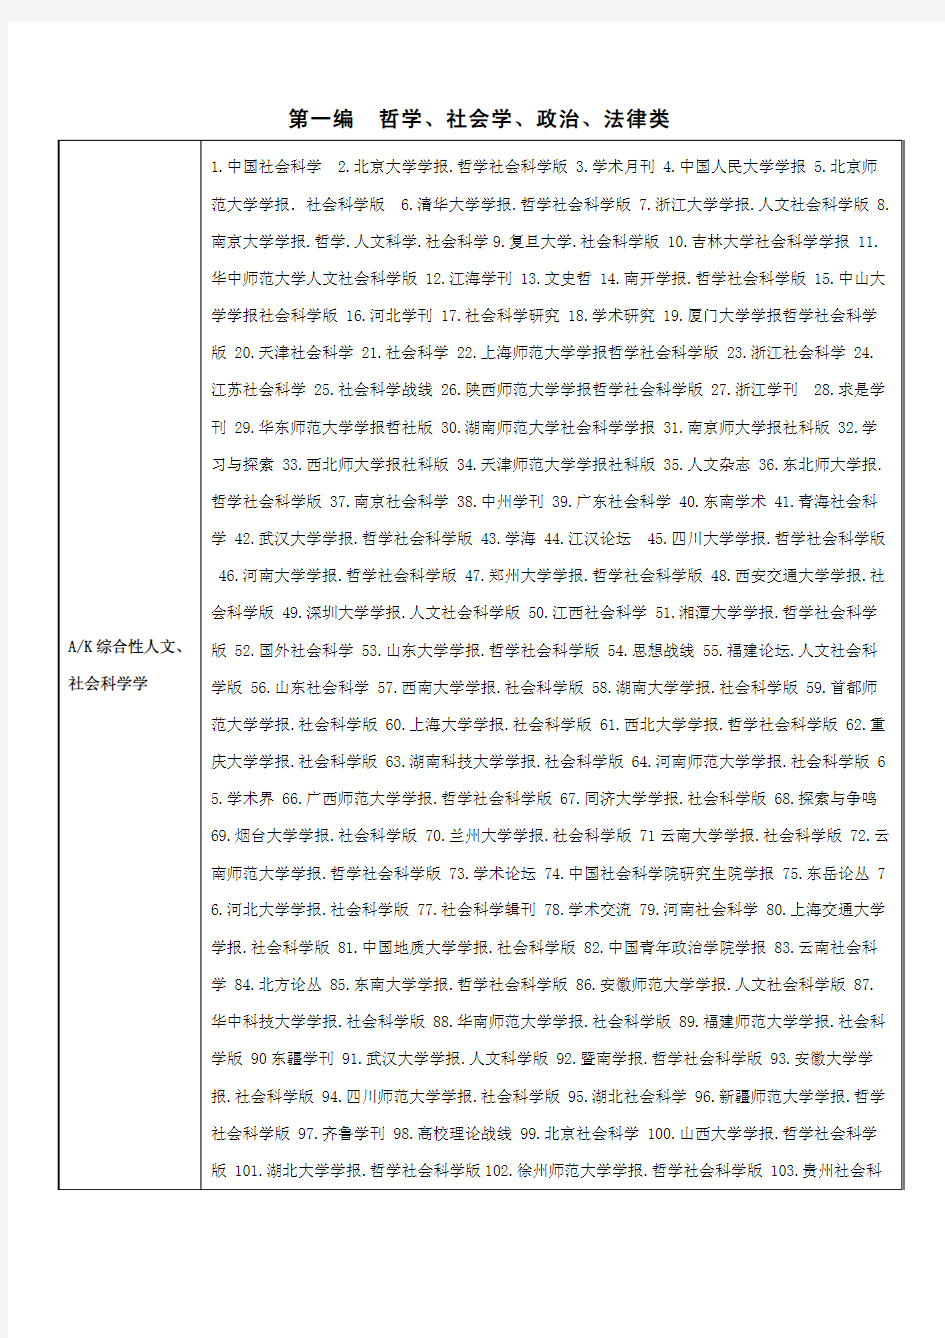 中文核心期刊要目总览(2012版)